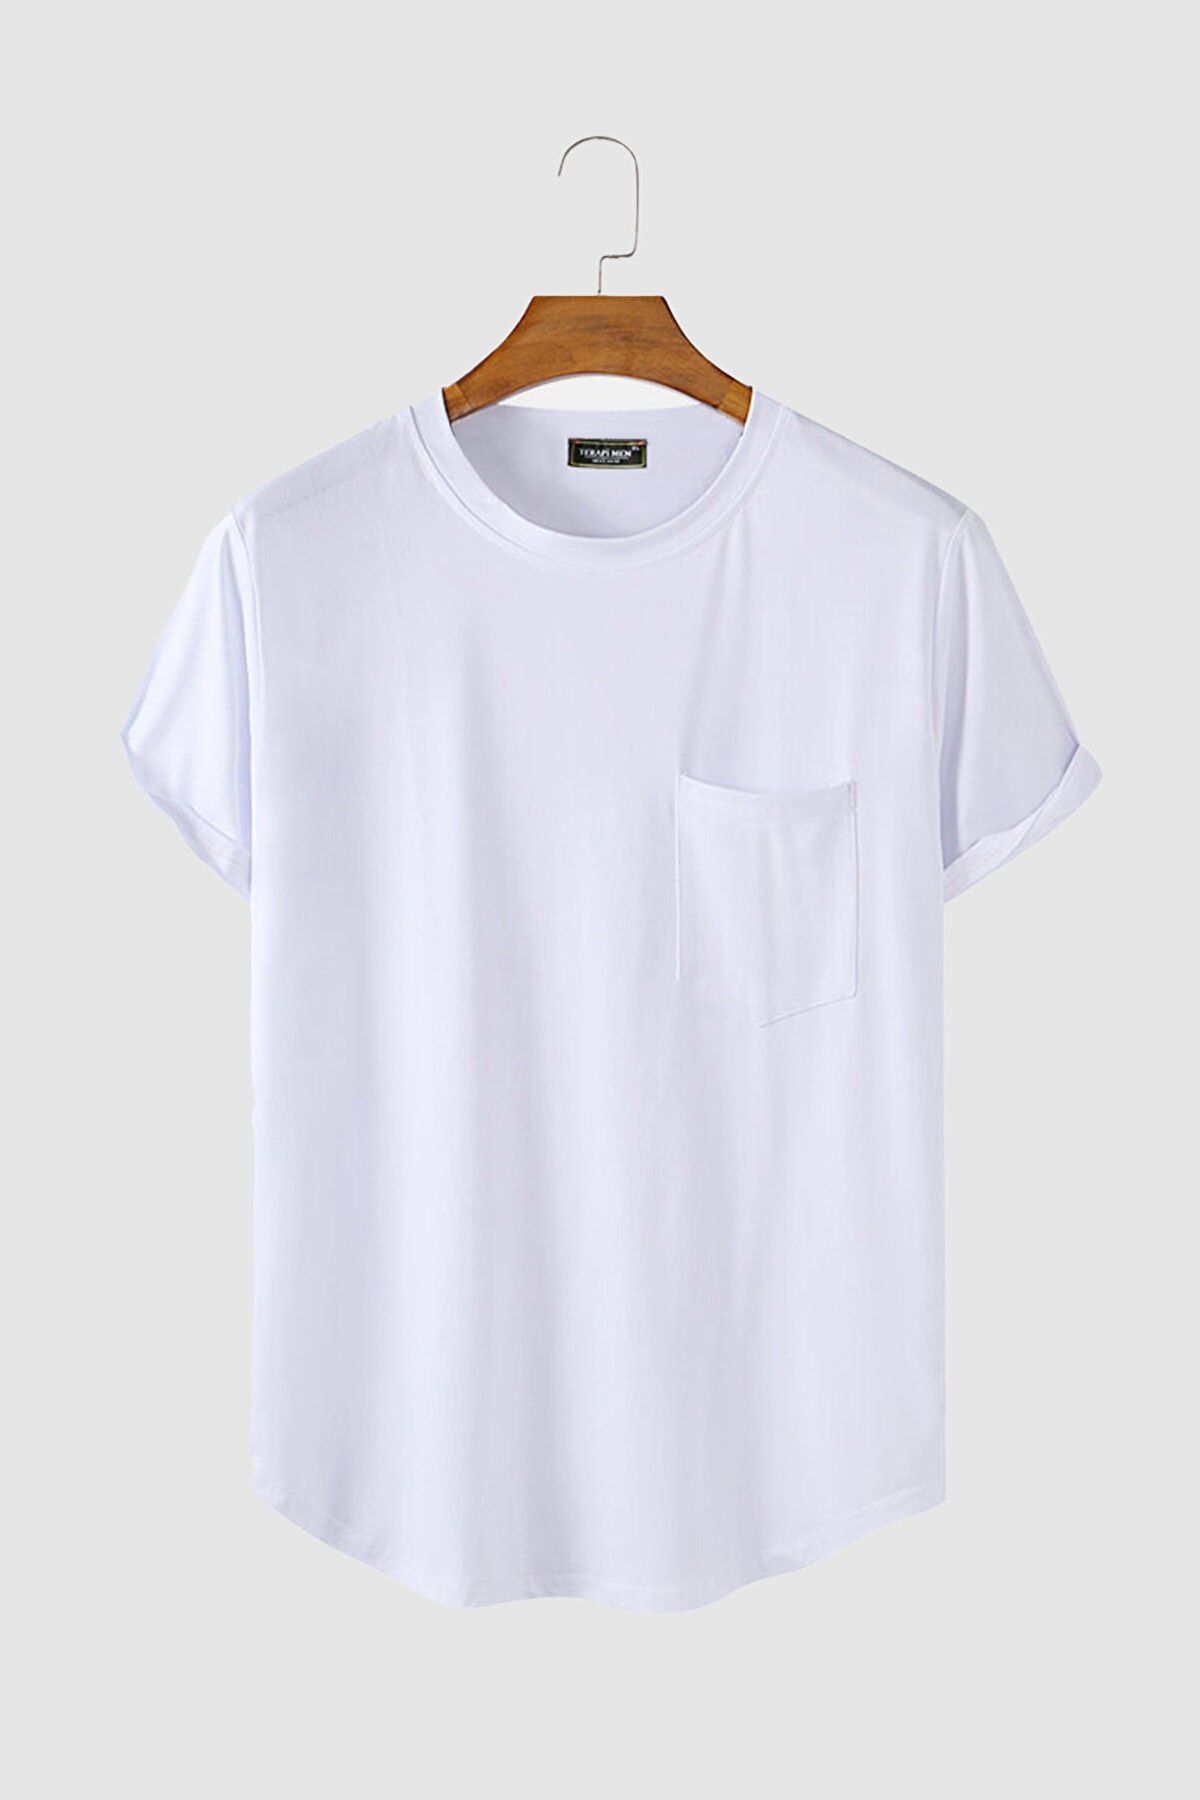 VEAVEN Erkek Yuvarlak Yaka Oval Kesim Cepli Basic T-shirt Stk306-0000001-1-2 Beyaz